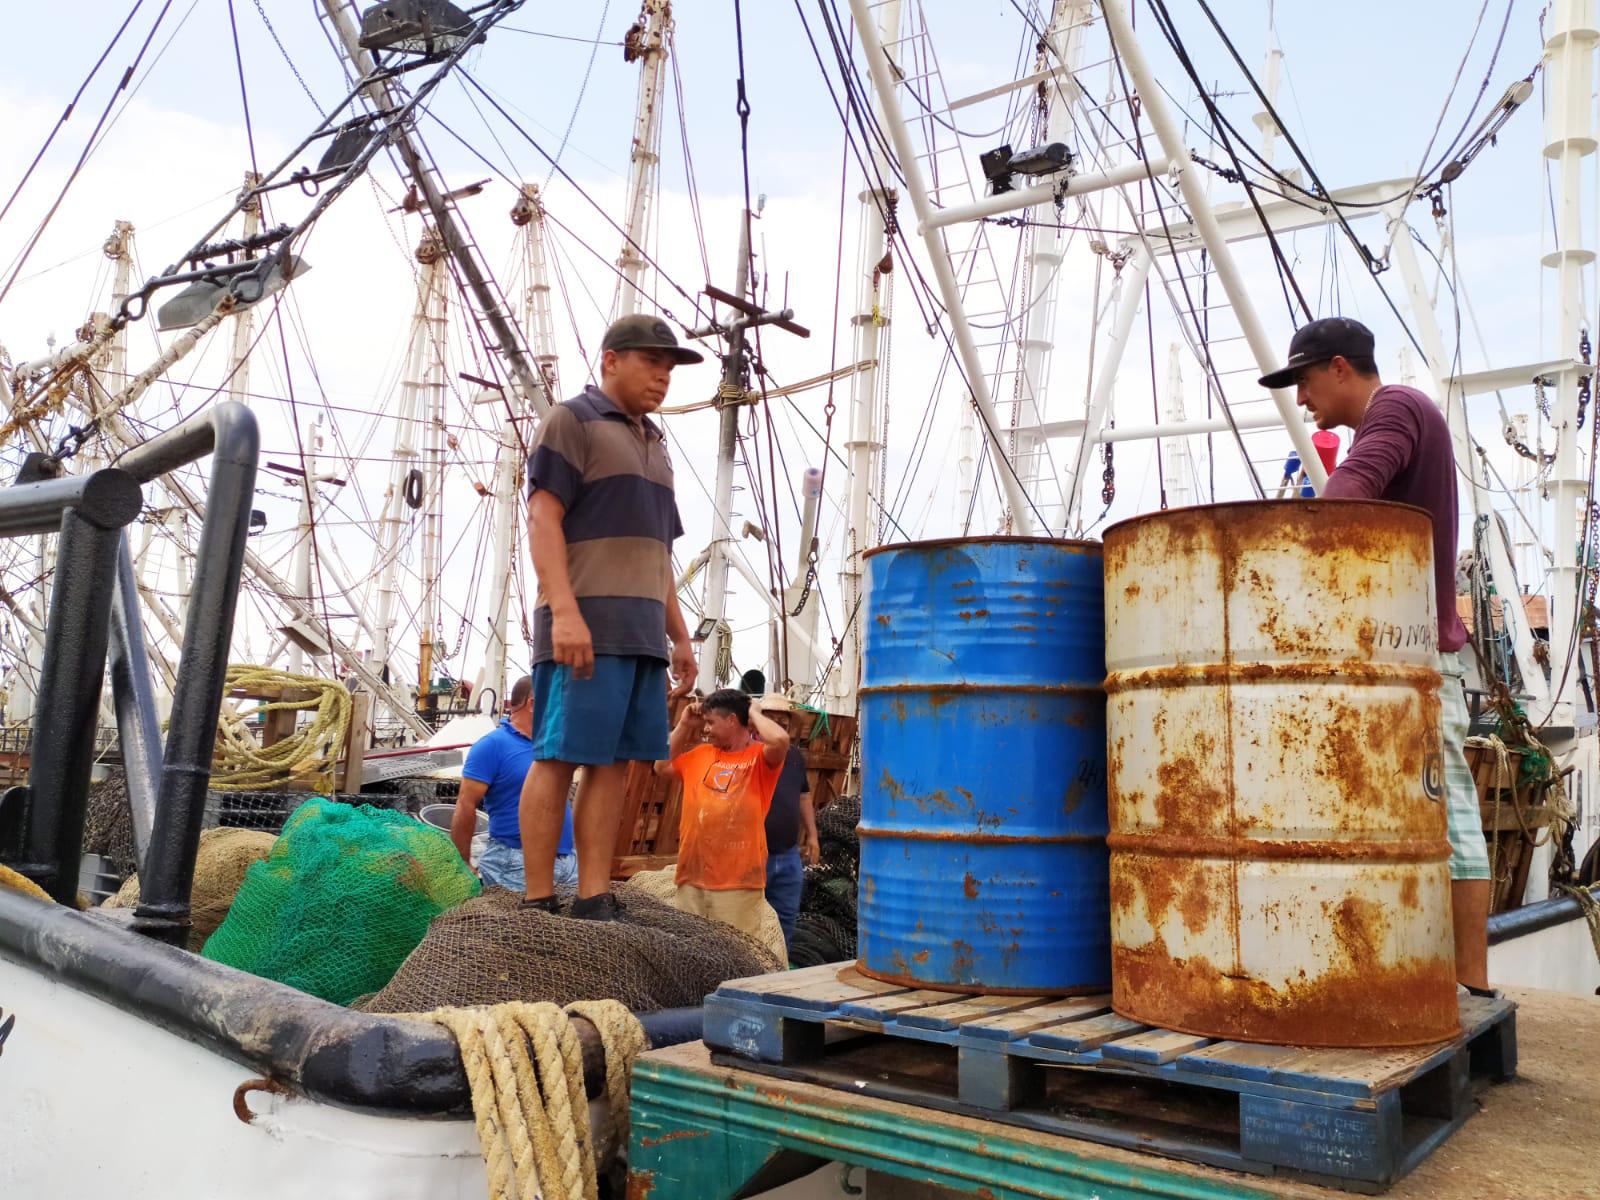 $!‘El gobierno nos debe echar la mano para salir adelante’, reclaman pescadores a semanas de iniciar capturas